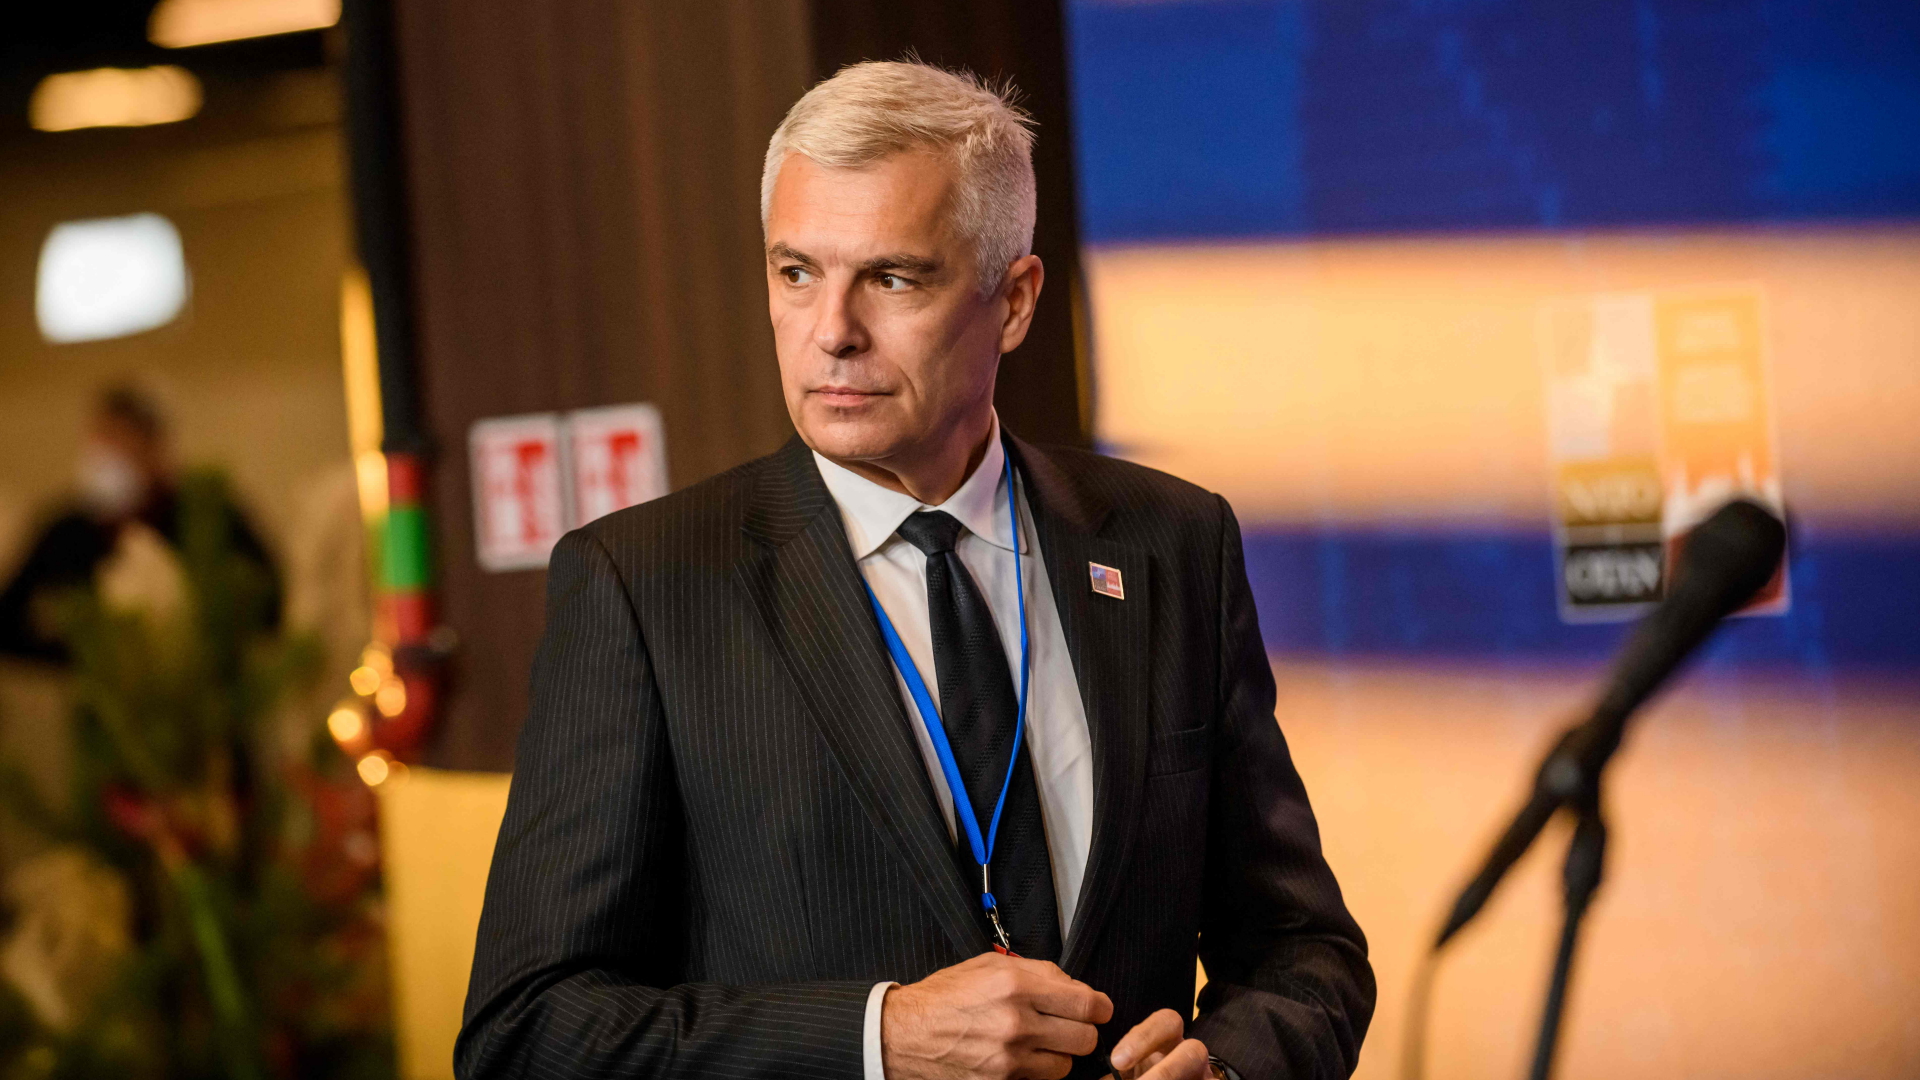 Der slowakische Außenminister Korcok bei einem Treffen in Riga (Lettland) im November 2021 | AFP